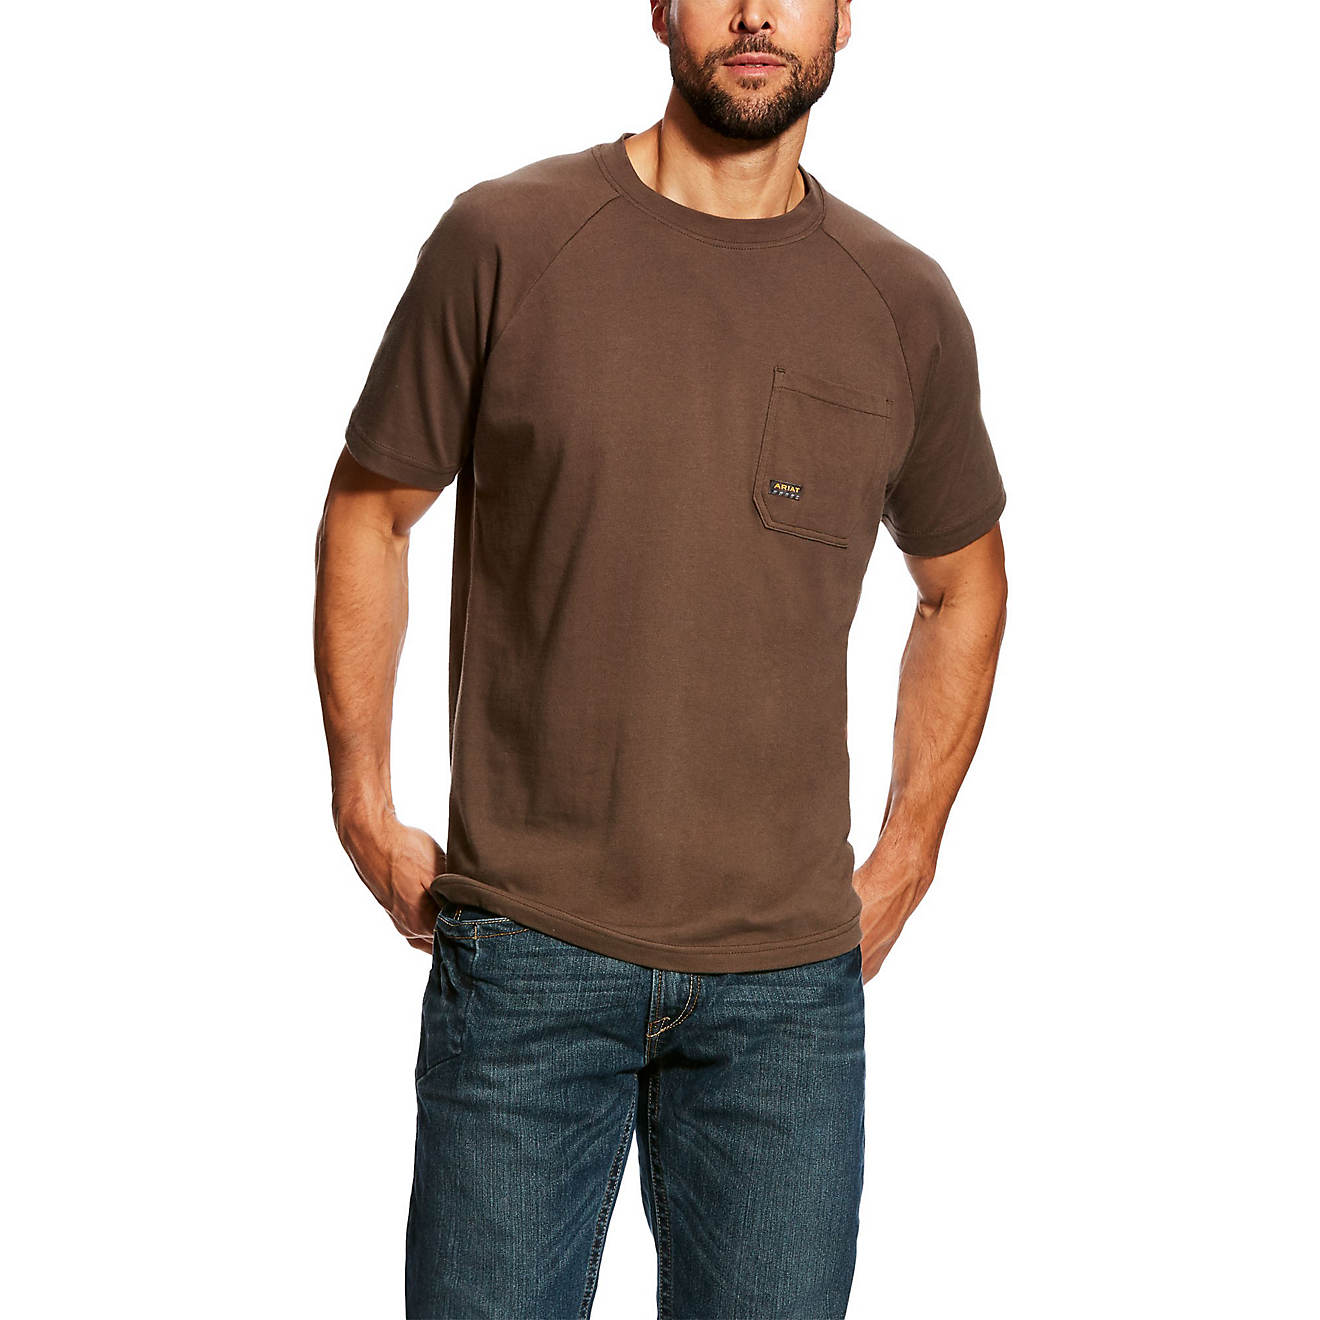 ARIAT Men's Rebar Cottonstrong Short Sleeve Crewwork Utility Tee Shirt 